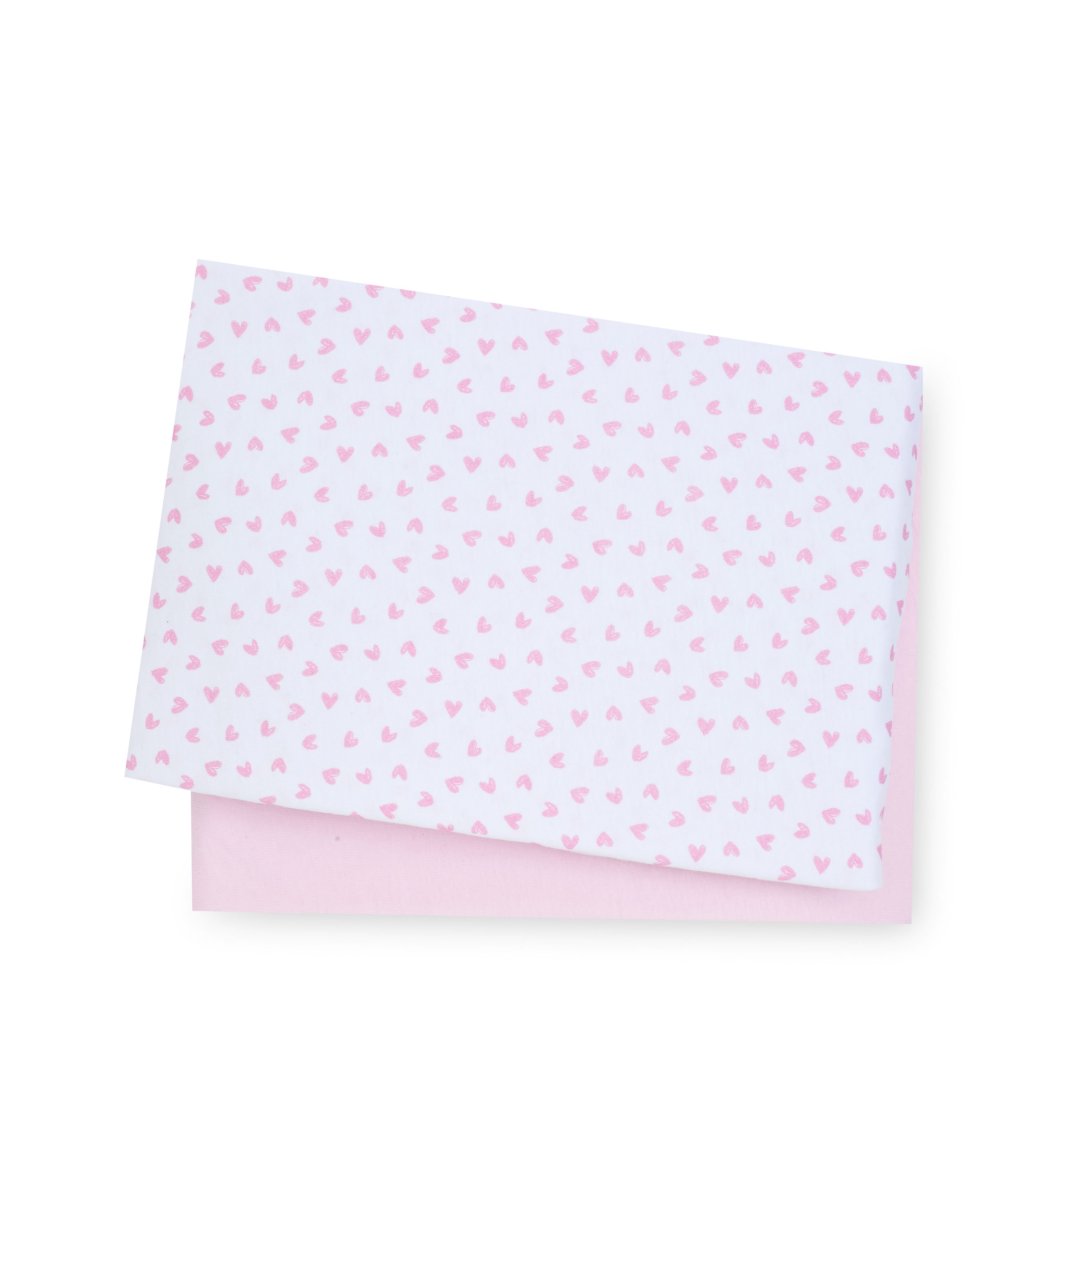 Простыни натяжные mothercare для колыбели, 89x45 см, 2 шт., розовый и белый фото